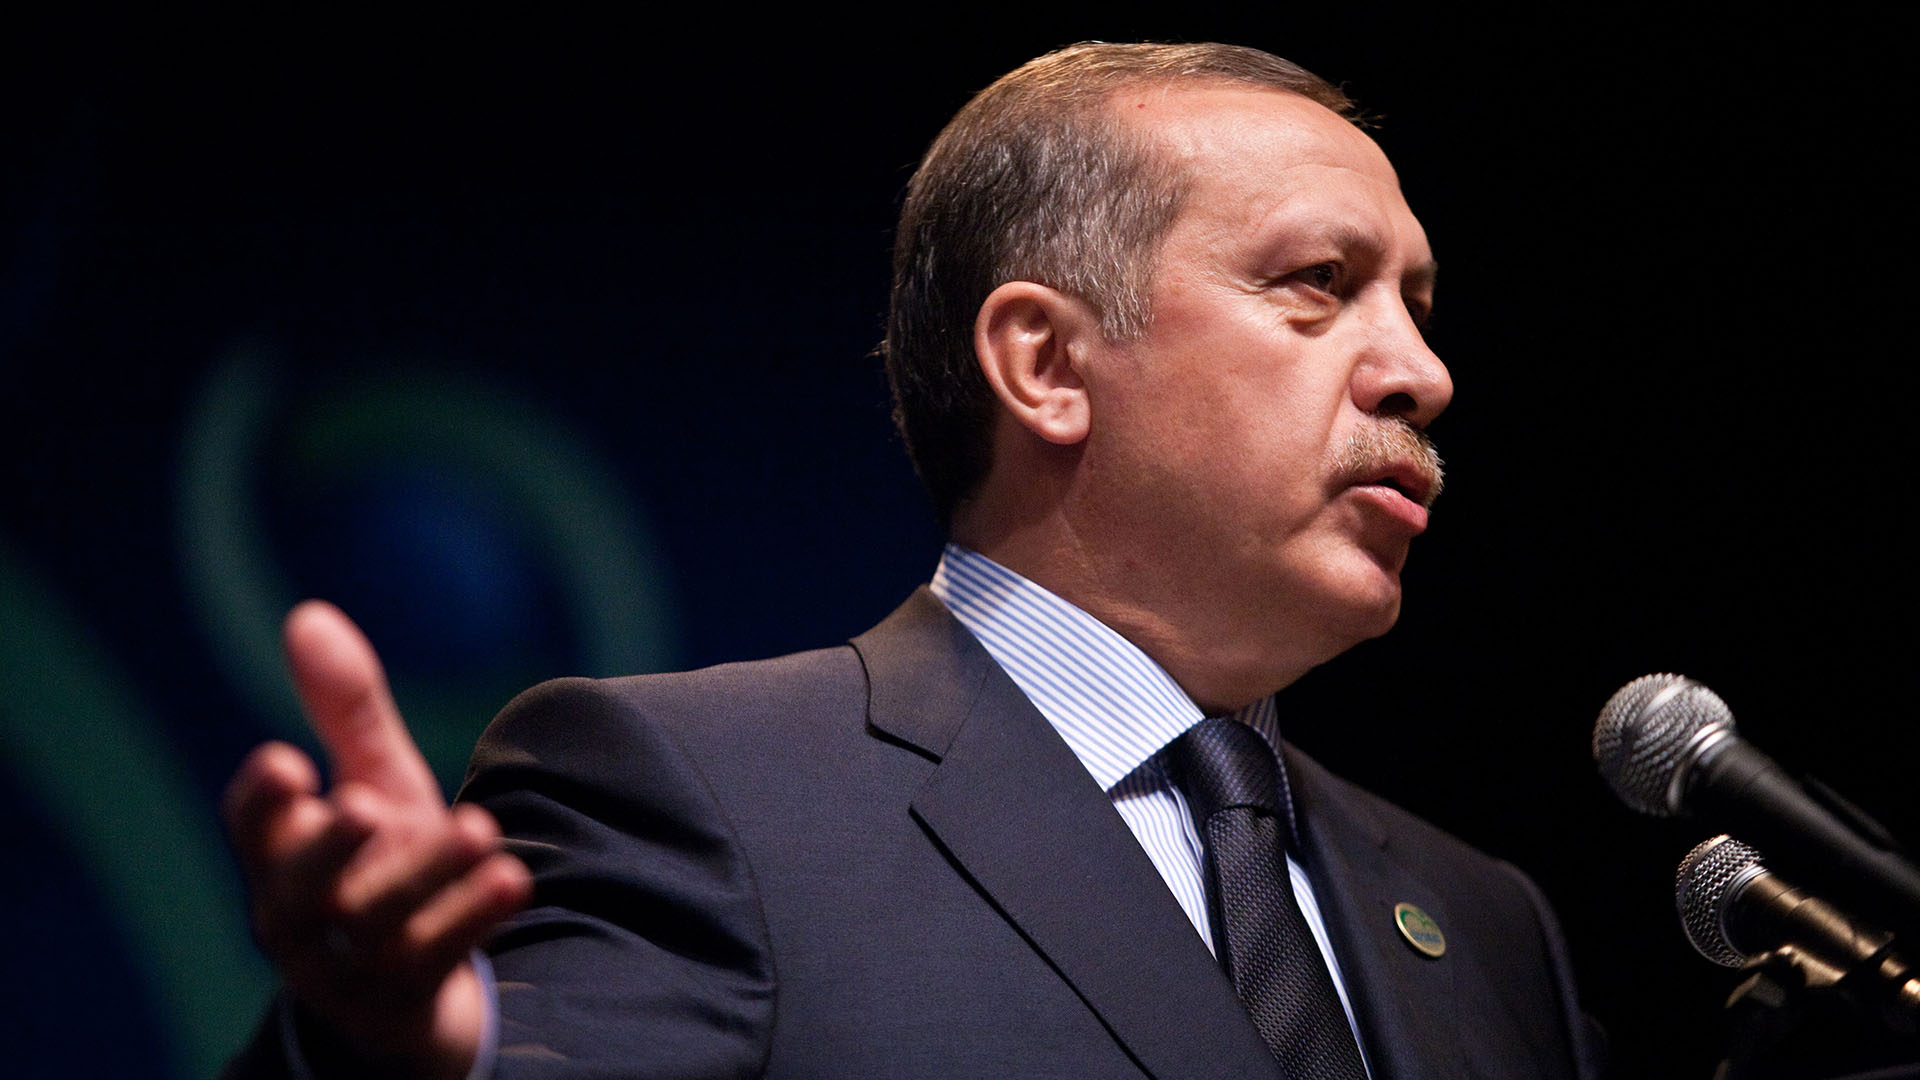 Le président Erdogan affirme avoir demandé cet appel pour alerter le pape des «violations de plus en plus graves des droits de l’homme» en Terre Sainte | © Flickr/unaoc/CC BY-NC-ND 2.0